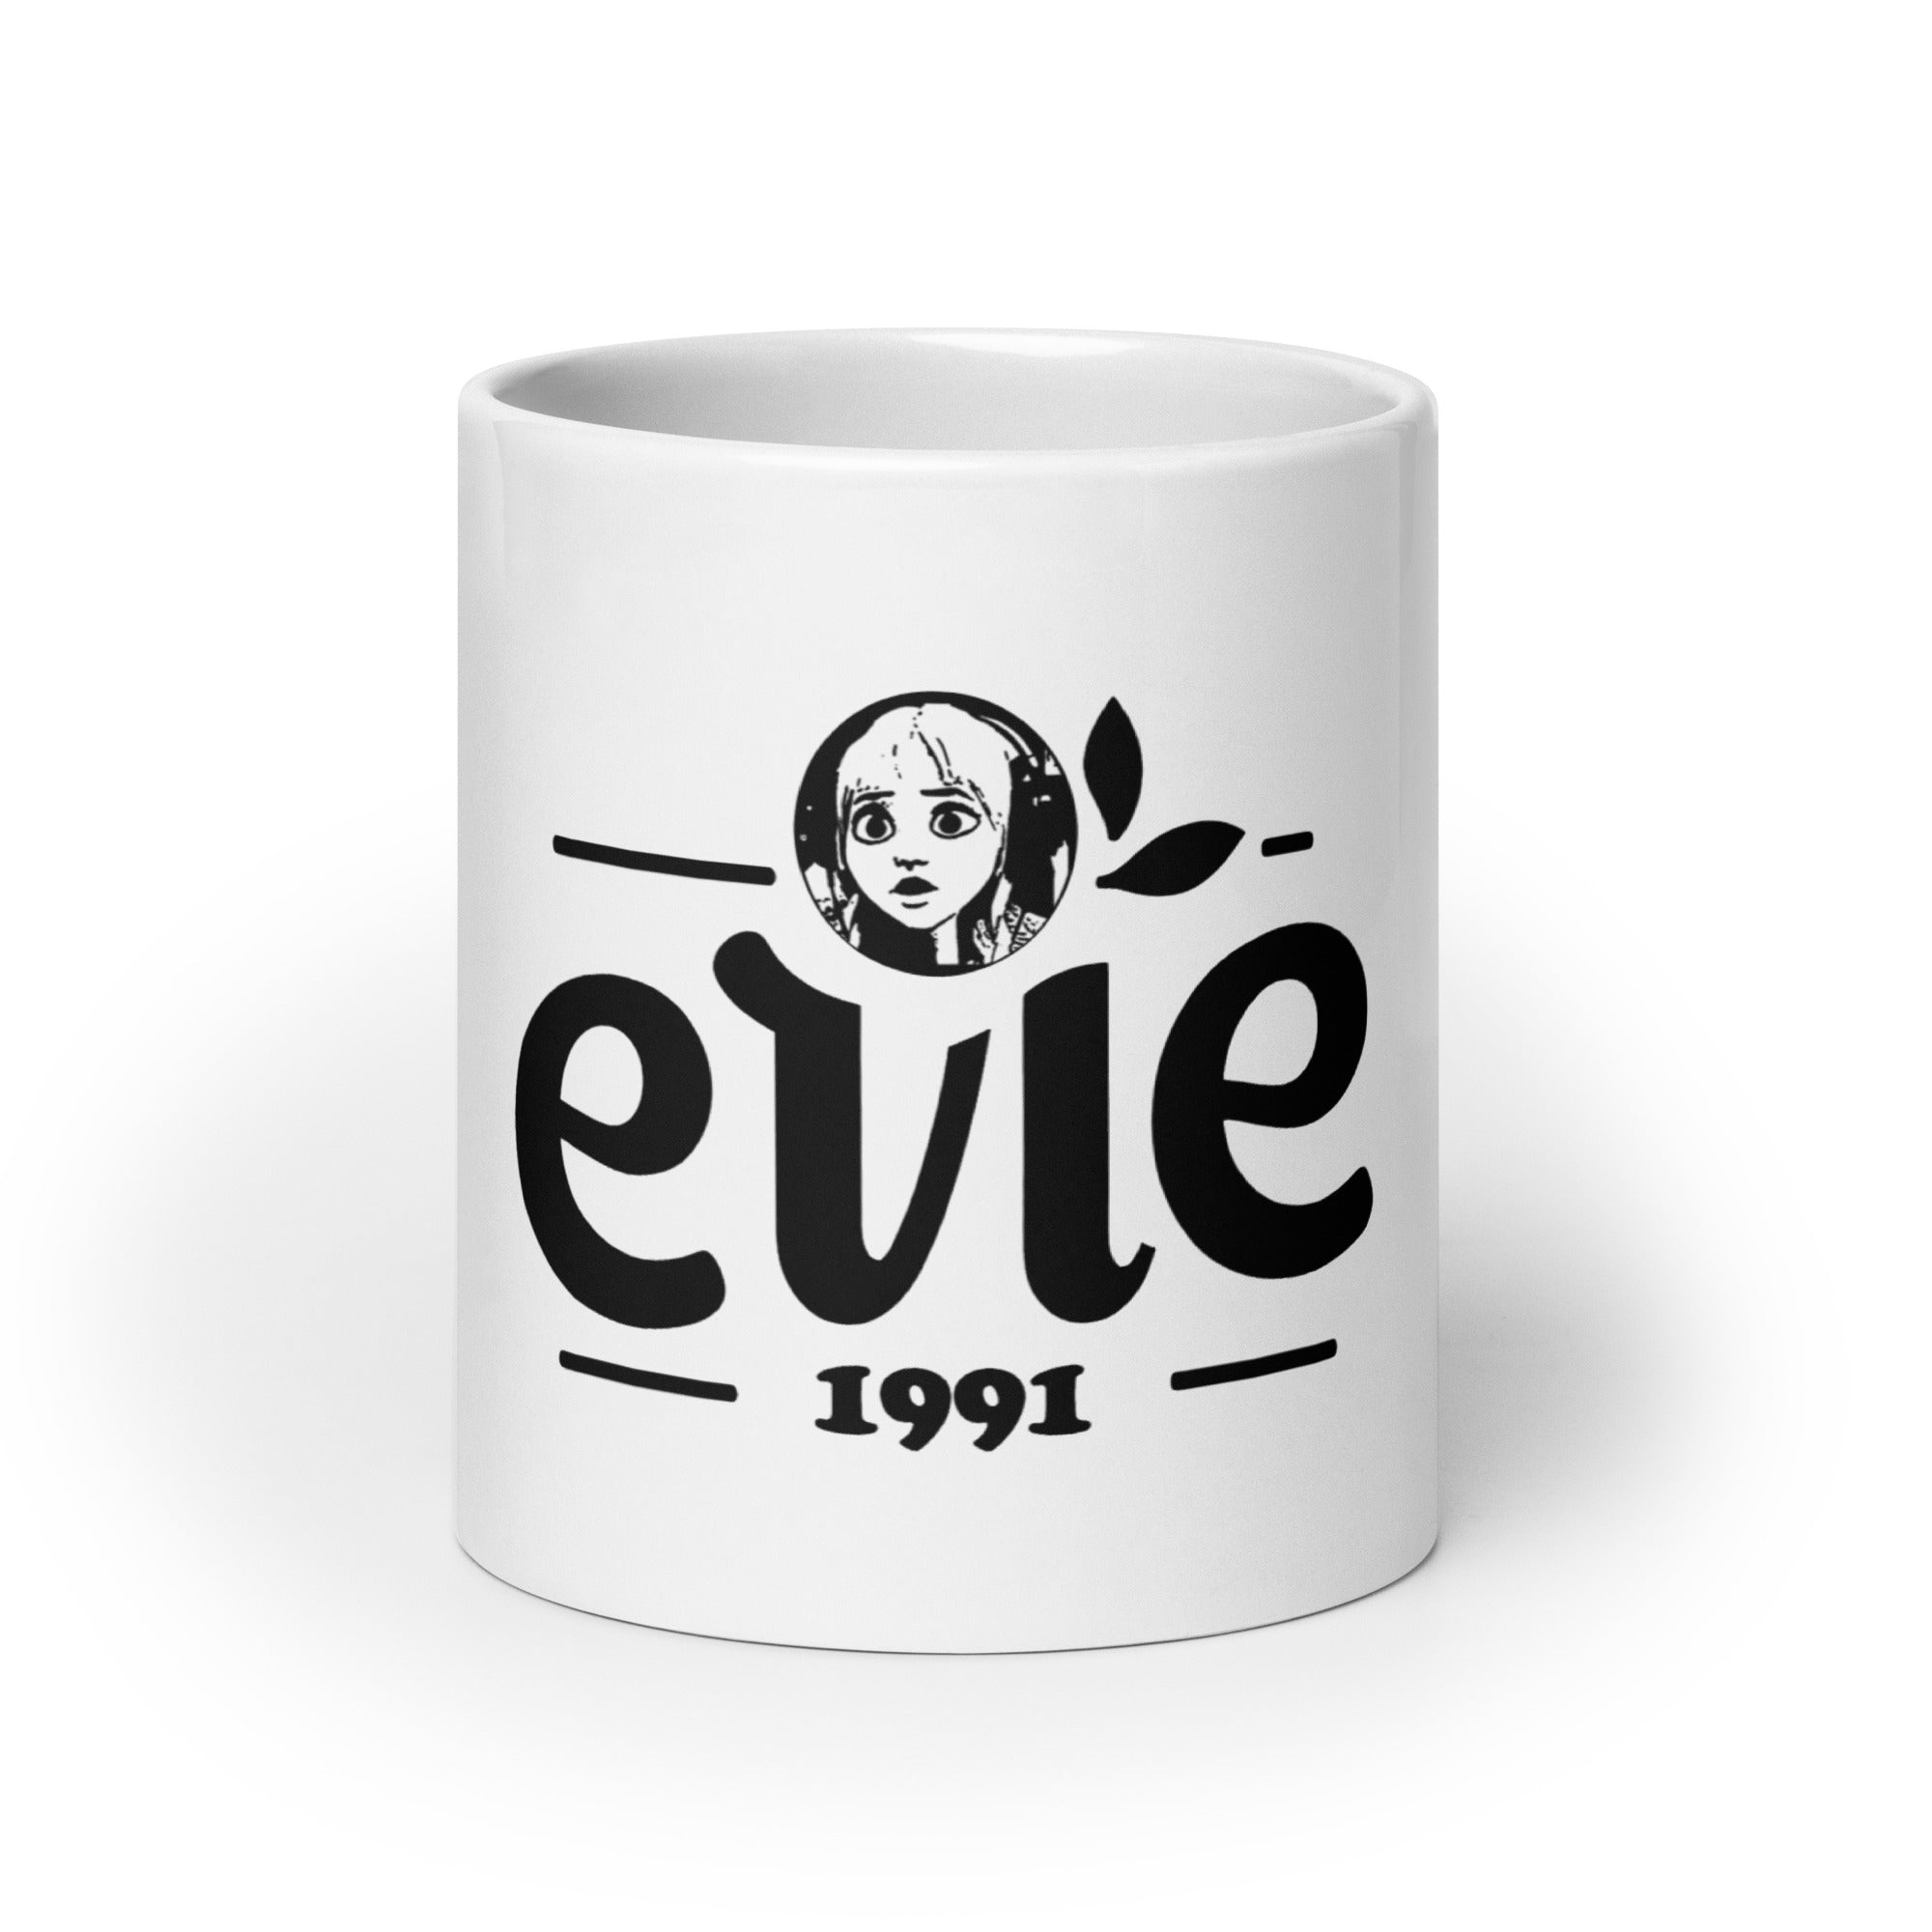 1991Evie - Weiße, glänzende Tasse